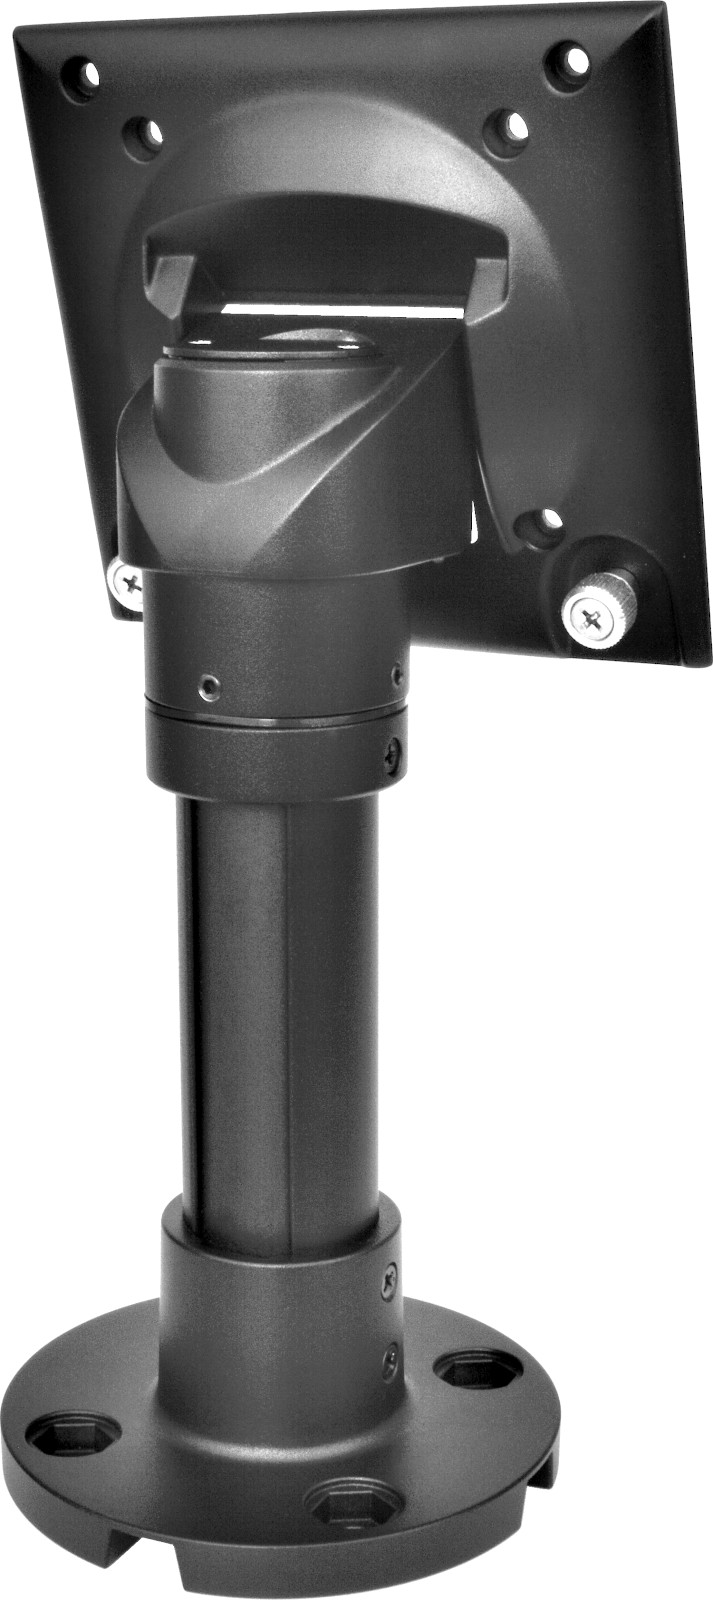 Virtuos Pole – stojan pro XPOS 205 mm, černá